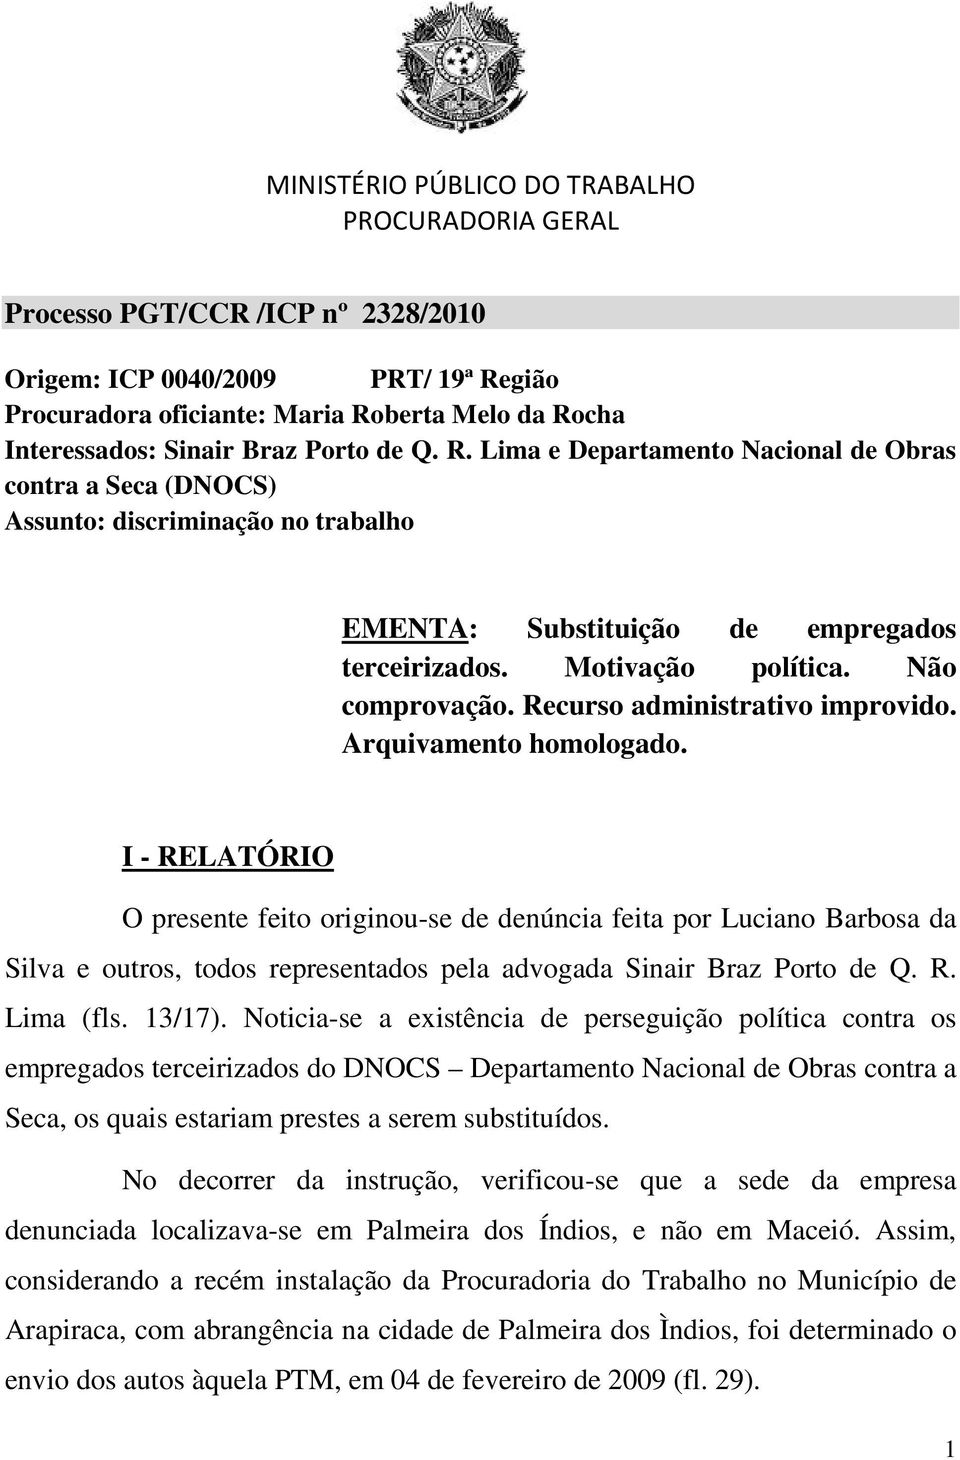 I - RELATÓRIO O presente feito originou-se de denúncia feita por Luciano Barbosa da Silva e outros, todos representados pela advogada Sinair Braz Porto de Q. R. Lima (fls. 13/17).